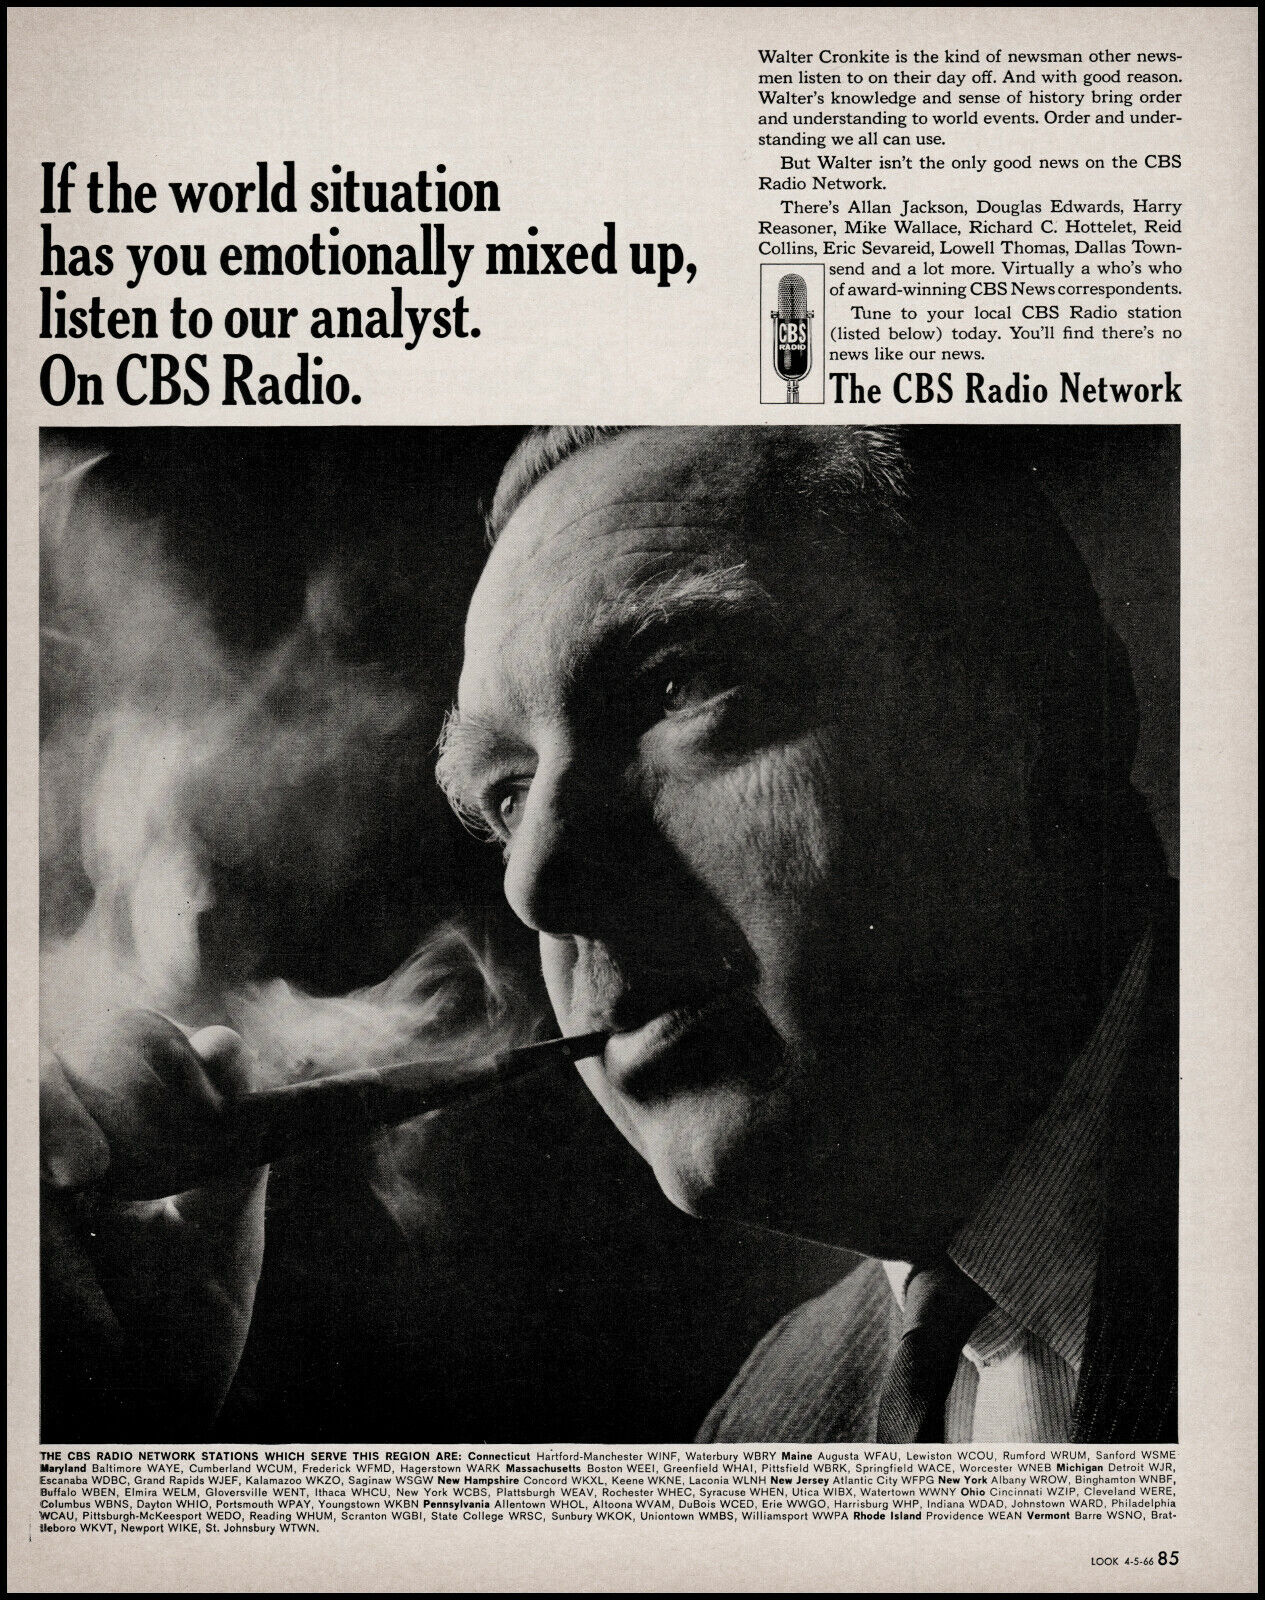 1966 Walter Cronkite news smoking pipe CBS Radio Network photo print ad adl85